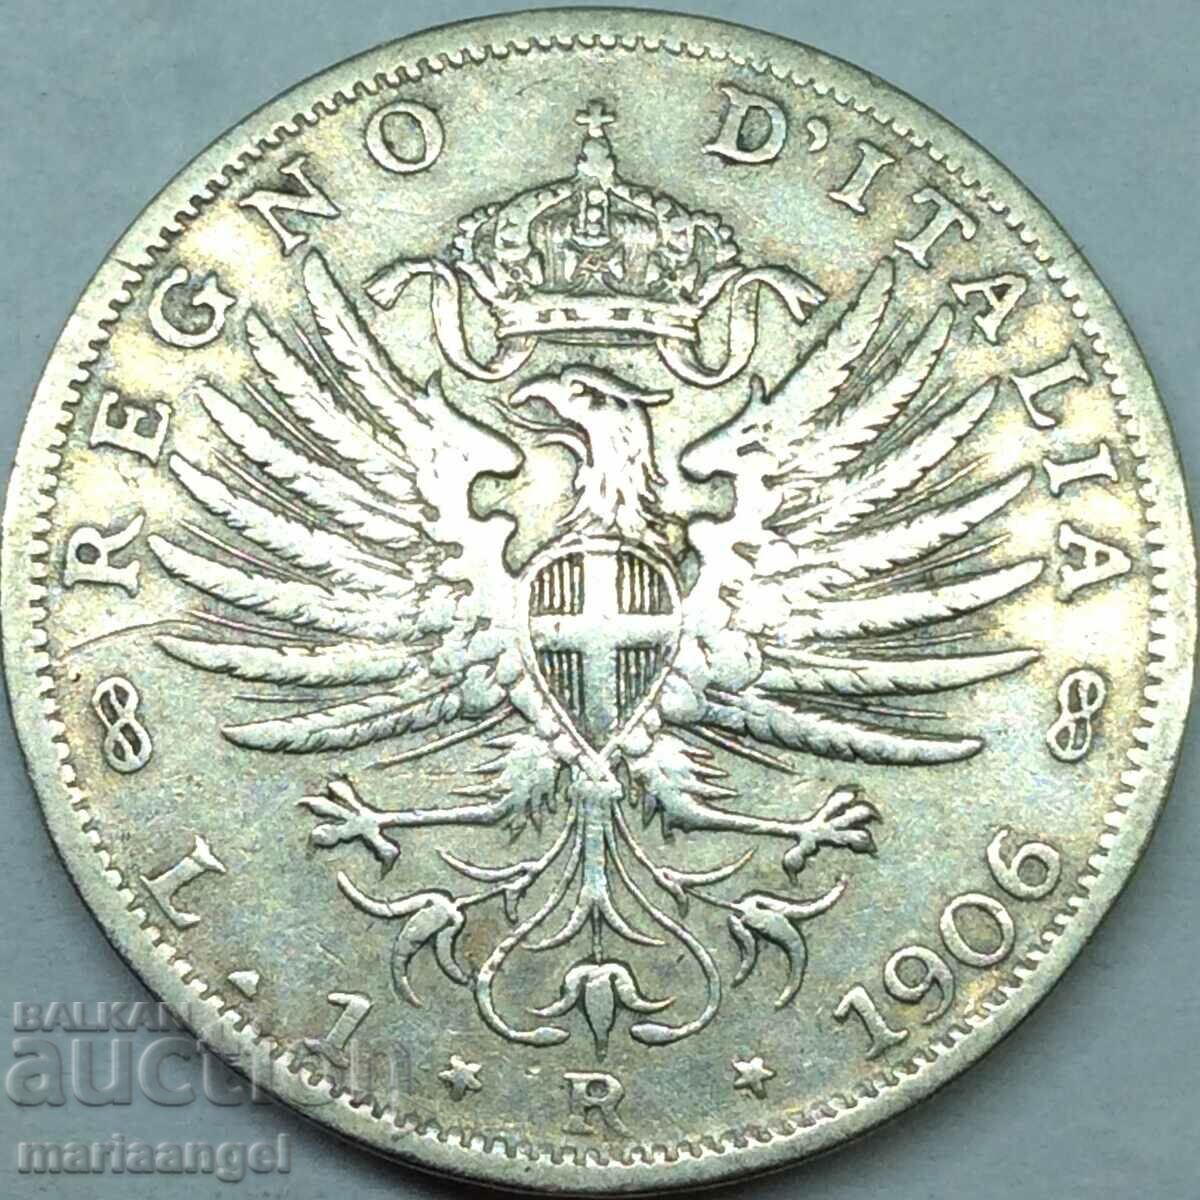 Ιταλία 1 Λίρα 1906 Eagle of Savoy Silver 2